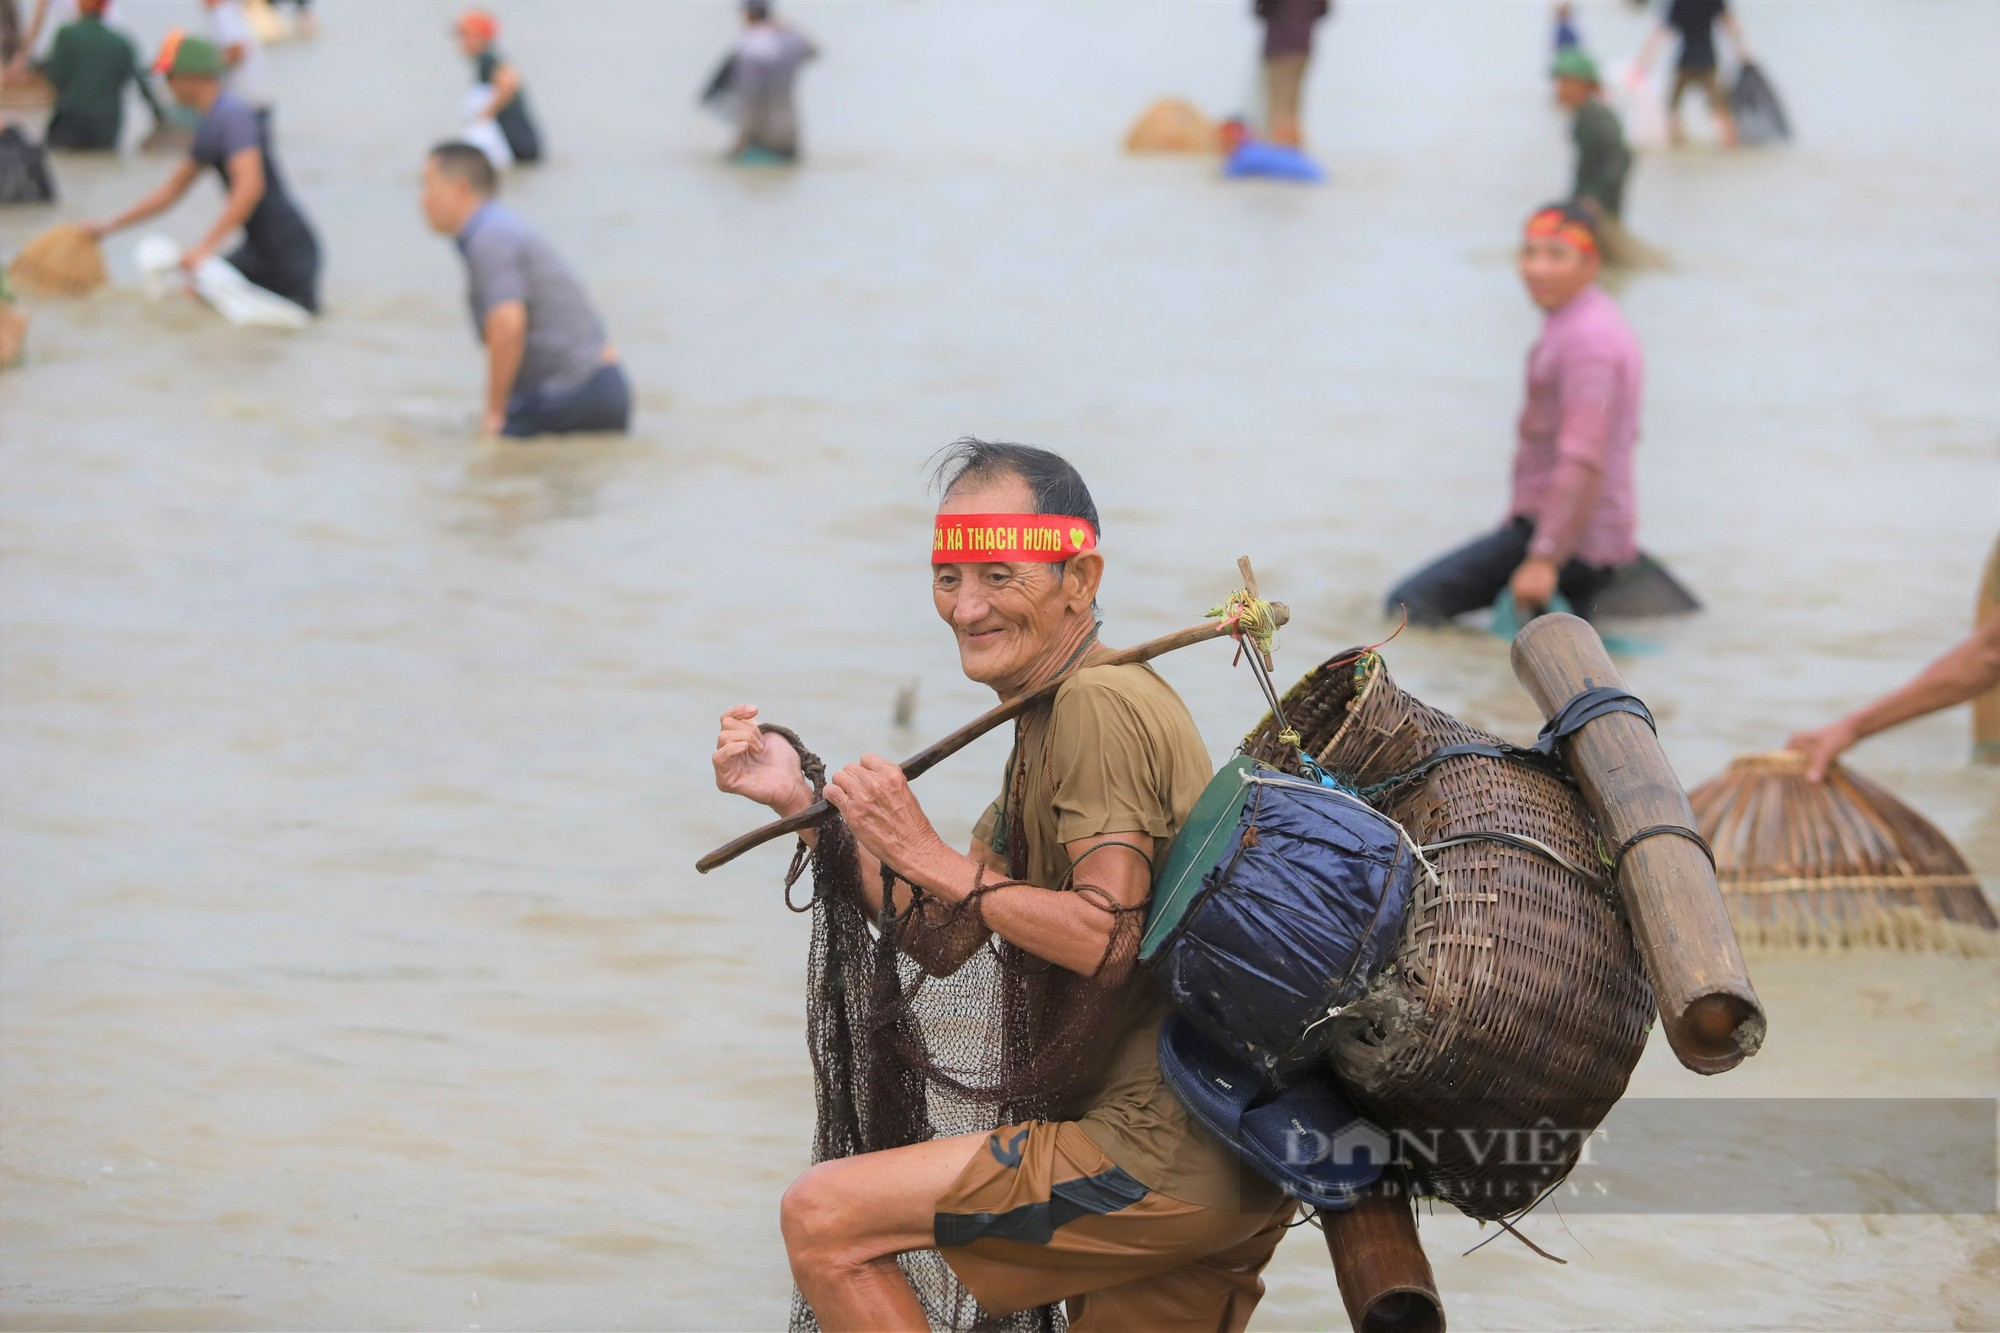 Hà Tĩnh: Hàng nghìn người dân reo hò, lội bùn tham gia Lễ hội bắt cá truyền thống xã Thạch Hưng - Ảnh 9.